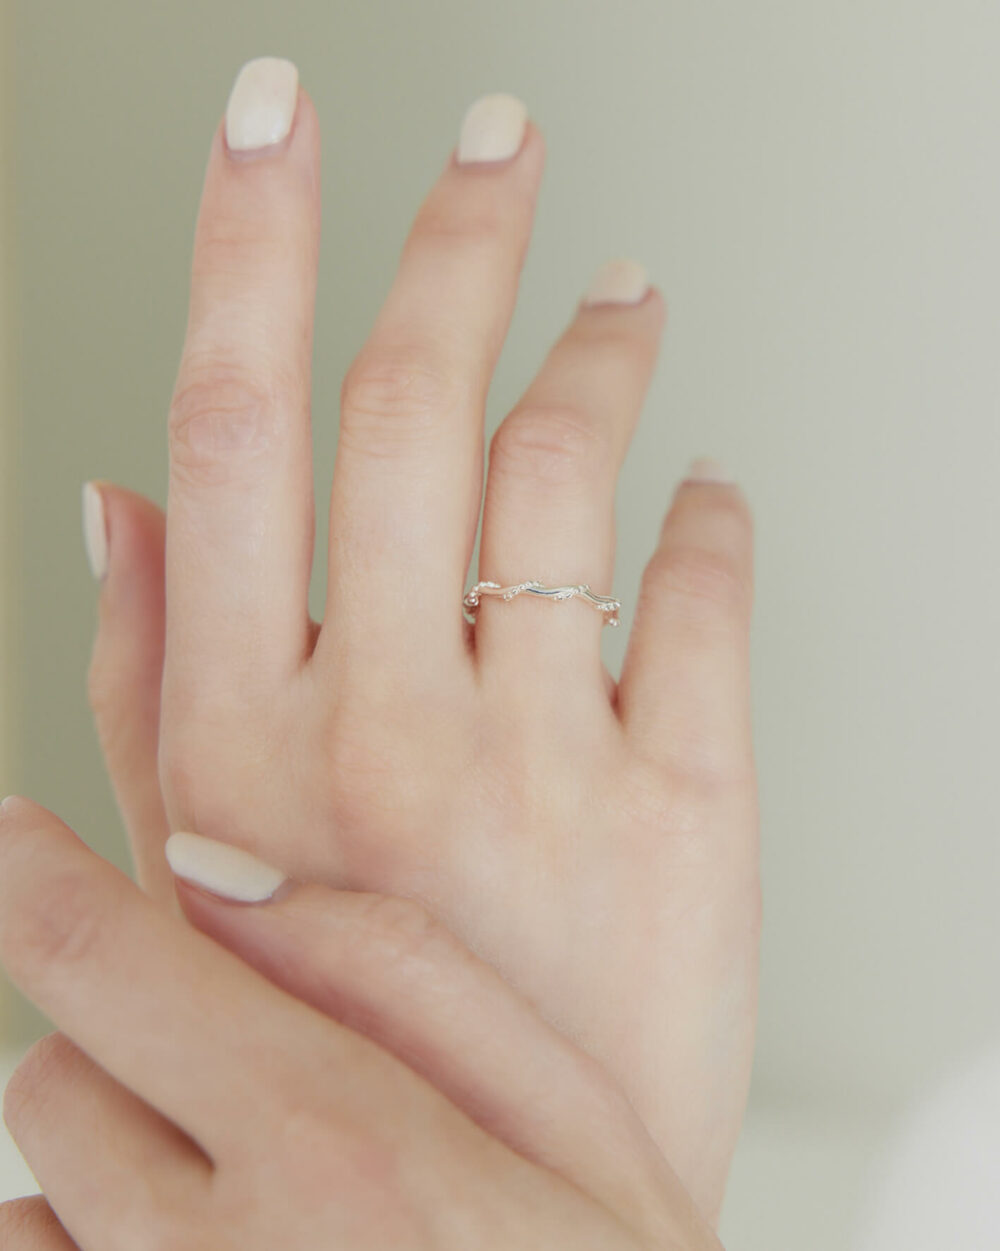 Eco安珂,韓國飾品,韓國戒指,韓國925純銀戒指,925純銀戒指,純銀戒指,可調純銀戒指,純銀竹節戒指